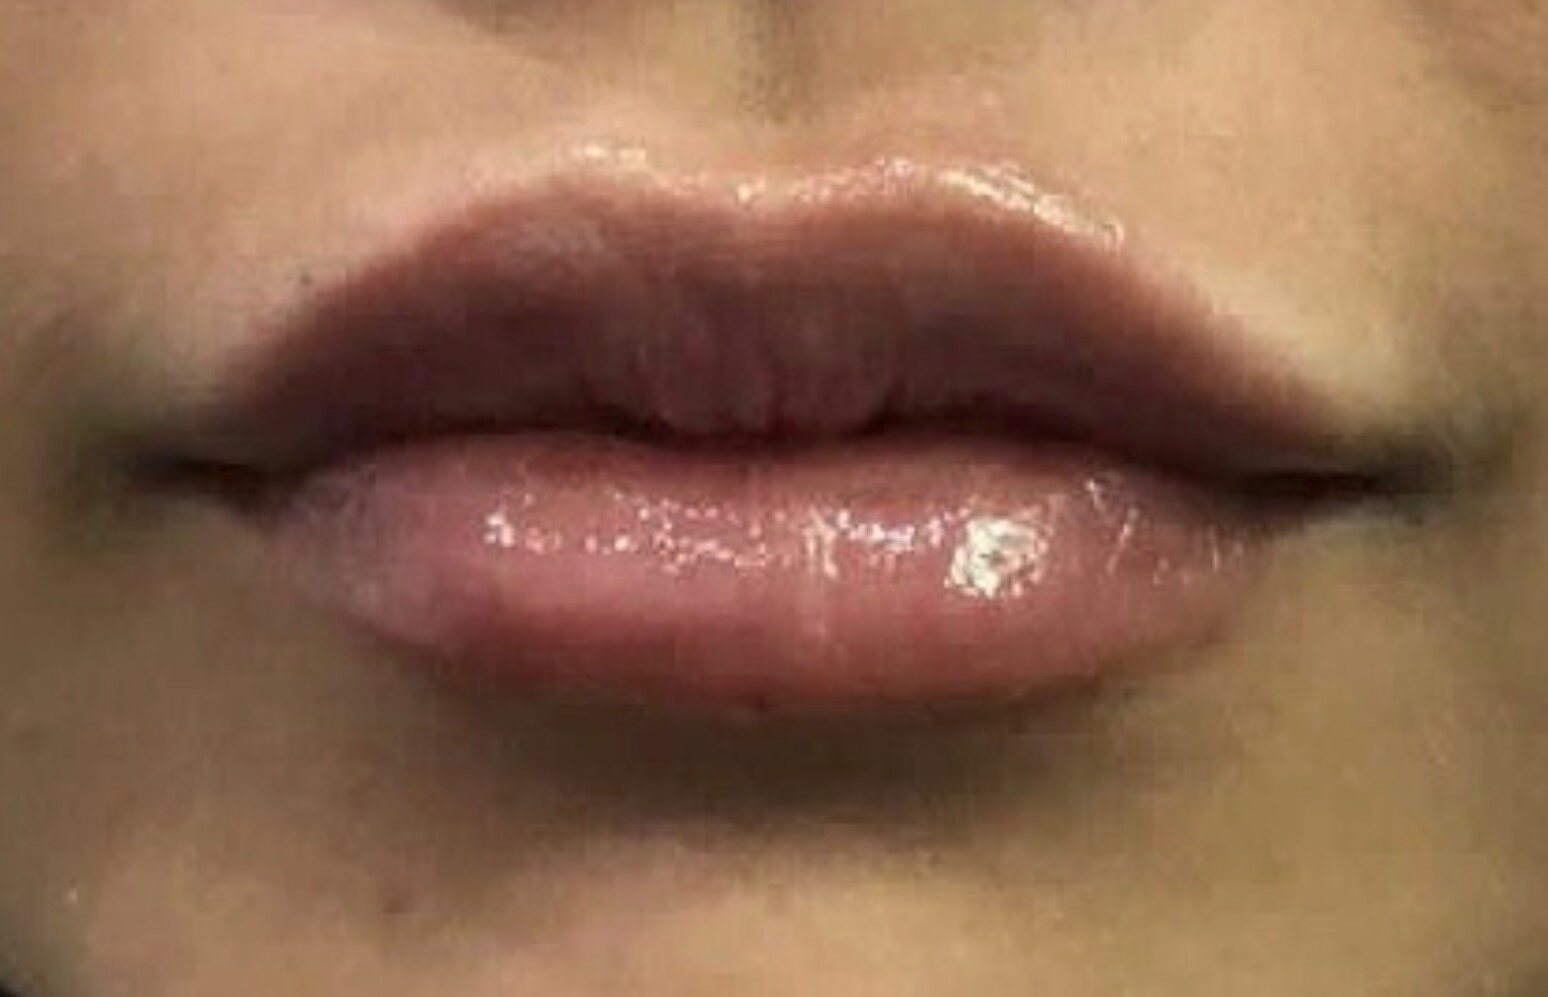 lip filler after